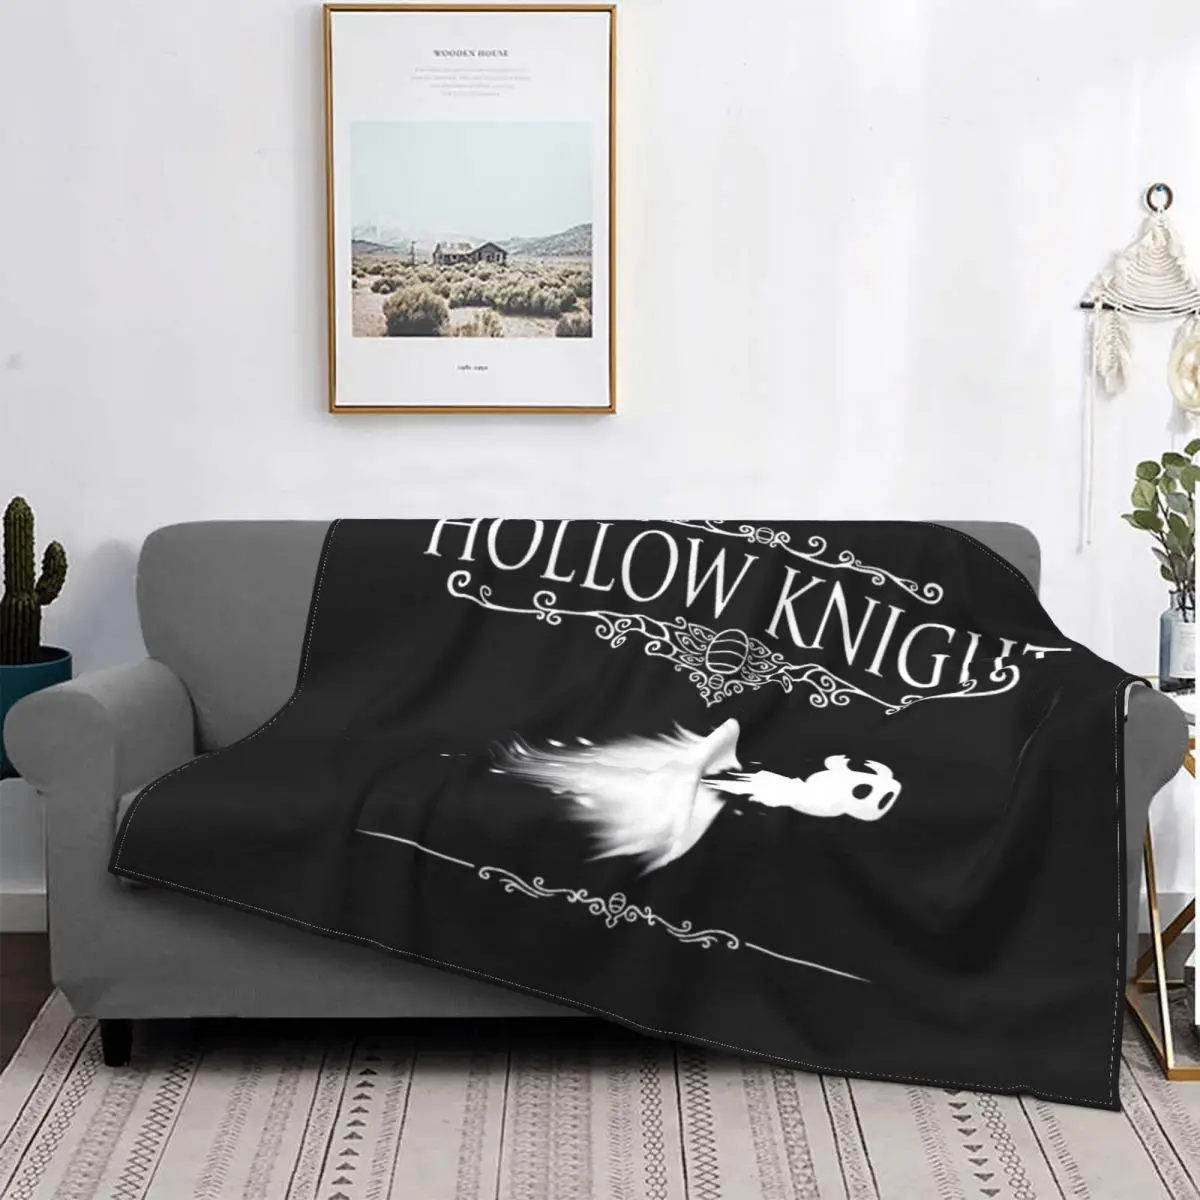 

Hollow Knight-colcha a cuadros para cama, toalla de muselina, manta Thermal, textil de lujo para el доме, 1 manta